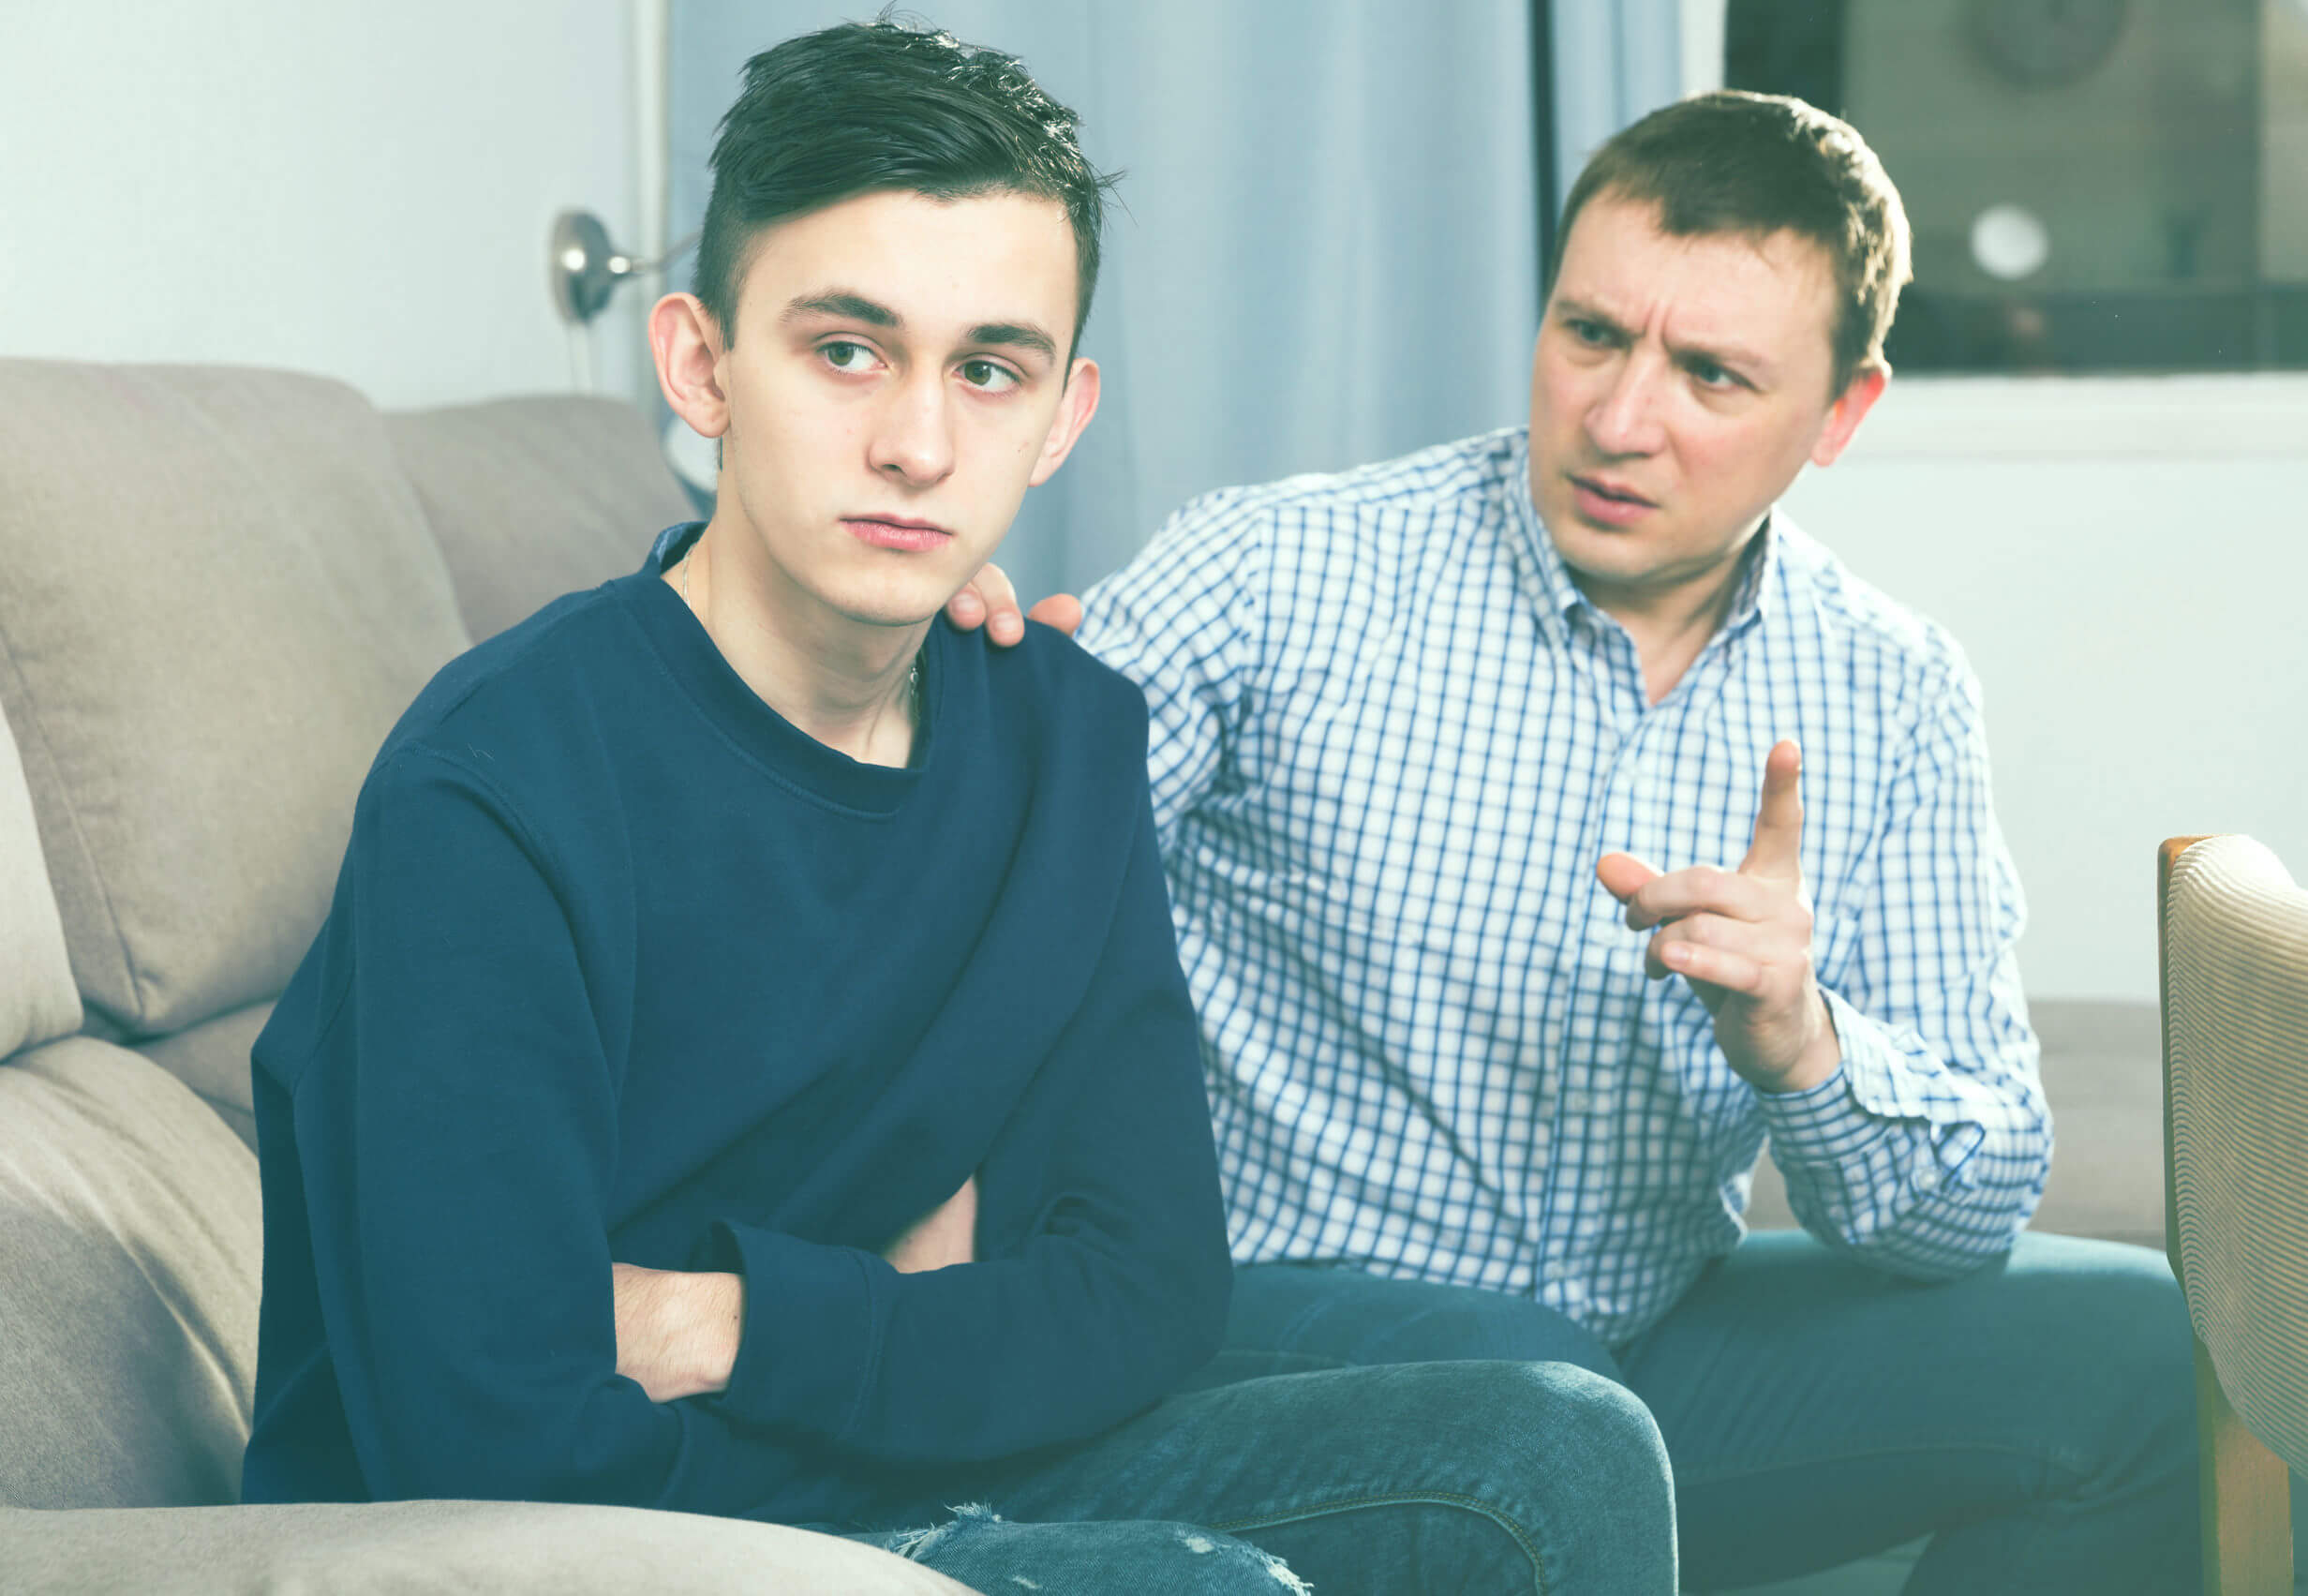 Padre hablando con su hijo sobre los problemas psicológicos en los adolescentes.